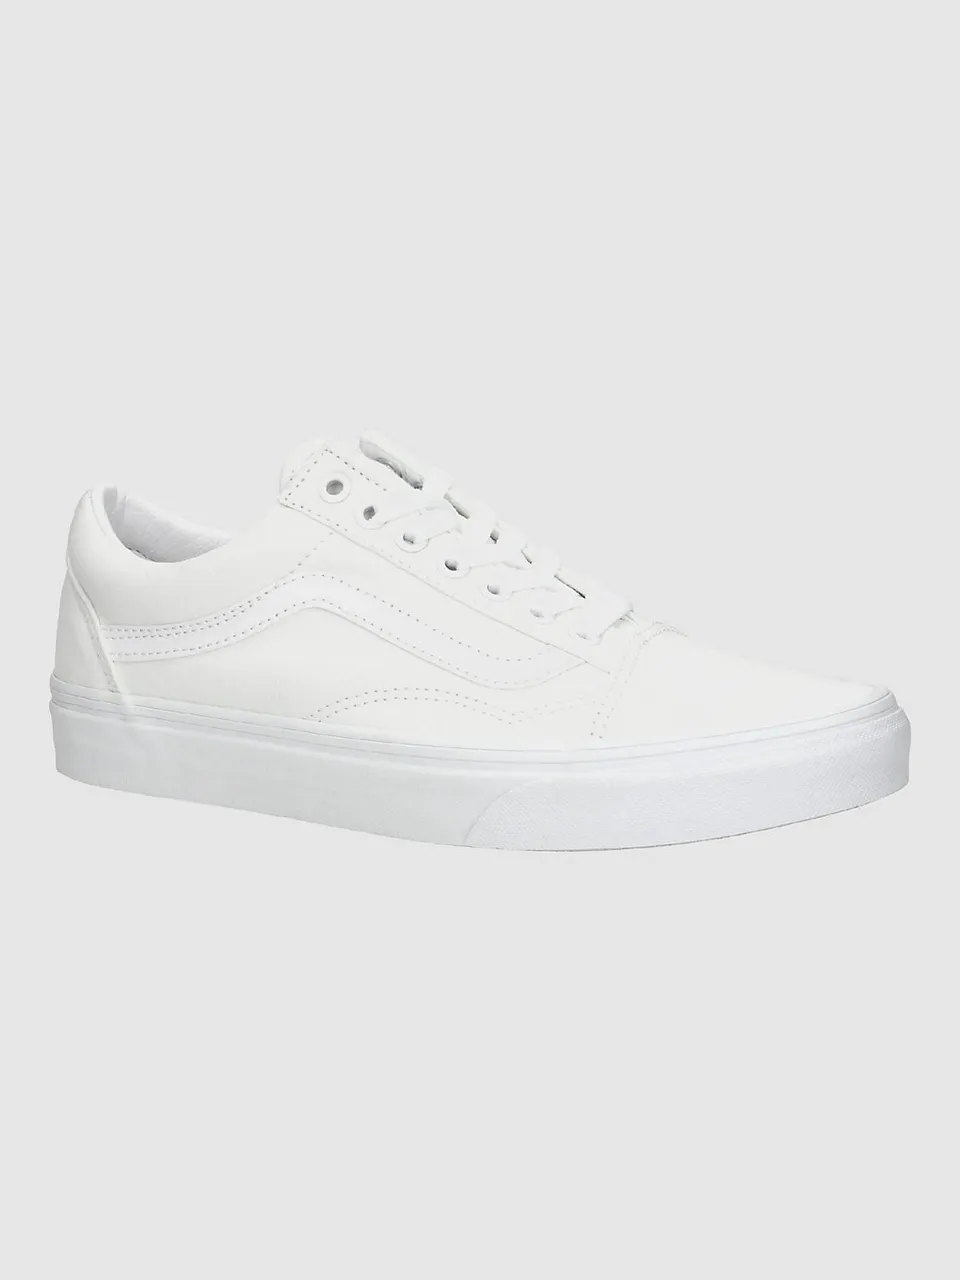 Vans Old Skool Sneakers true white